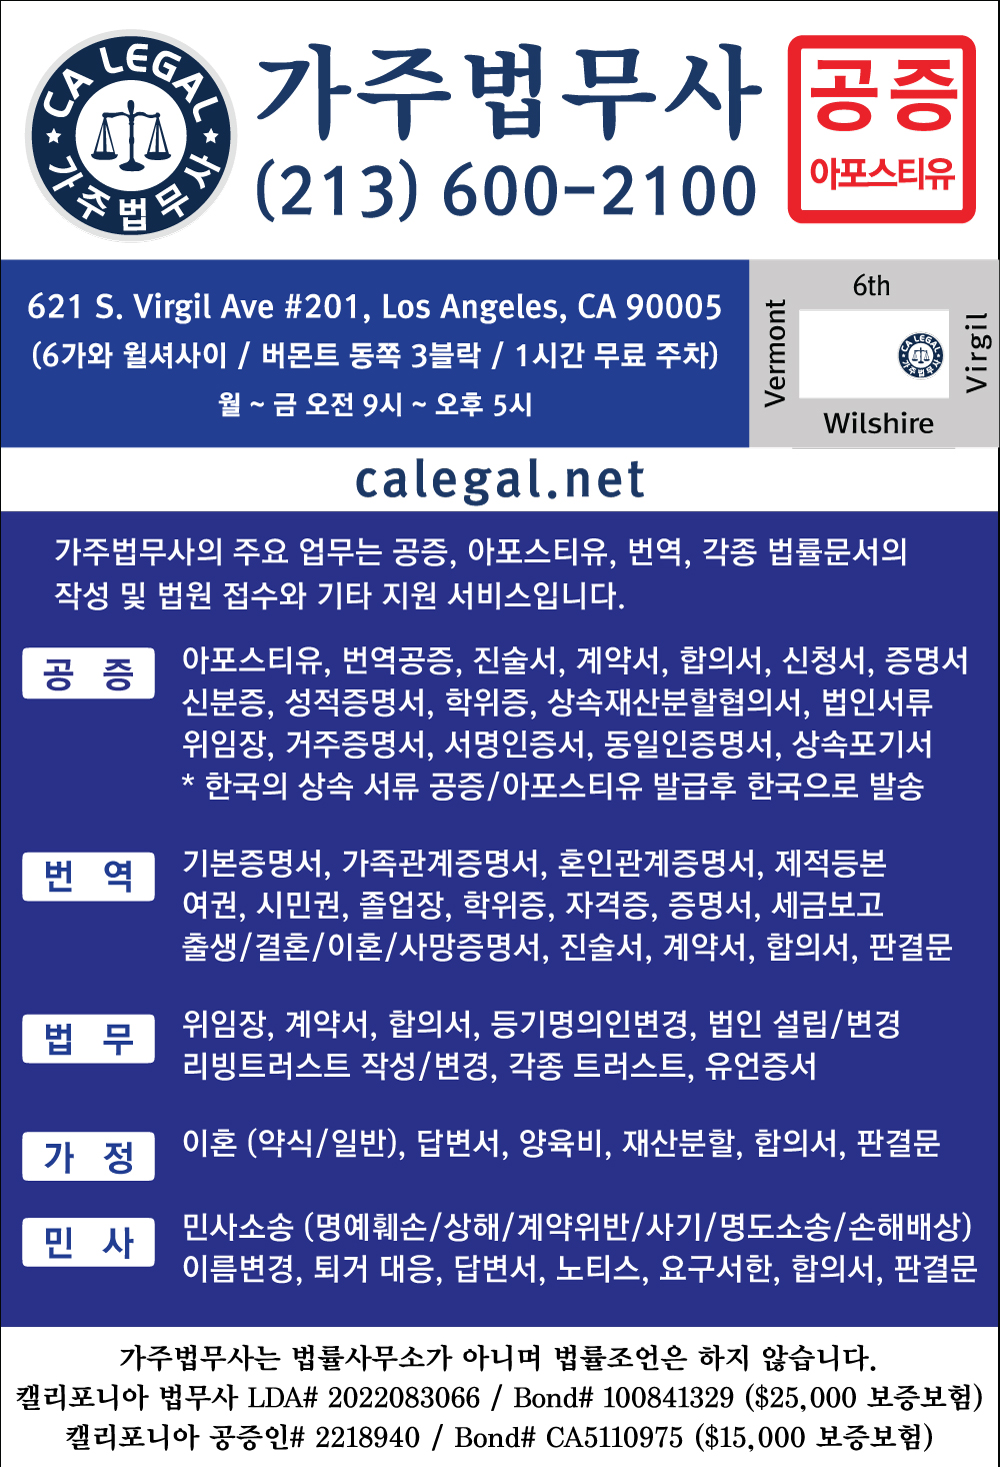 가주법무사 한국일보업소록 광고